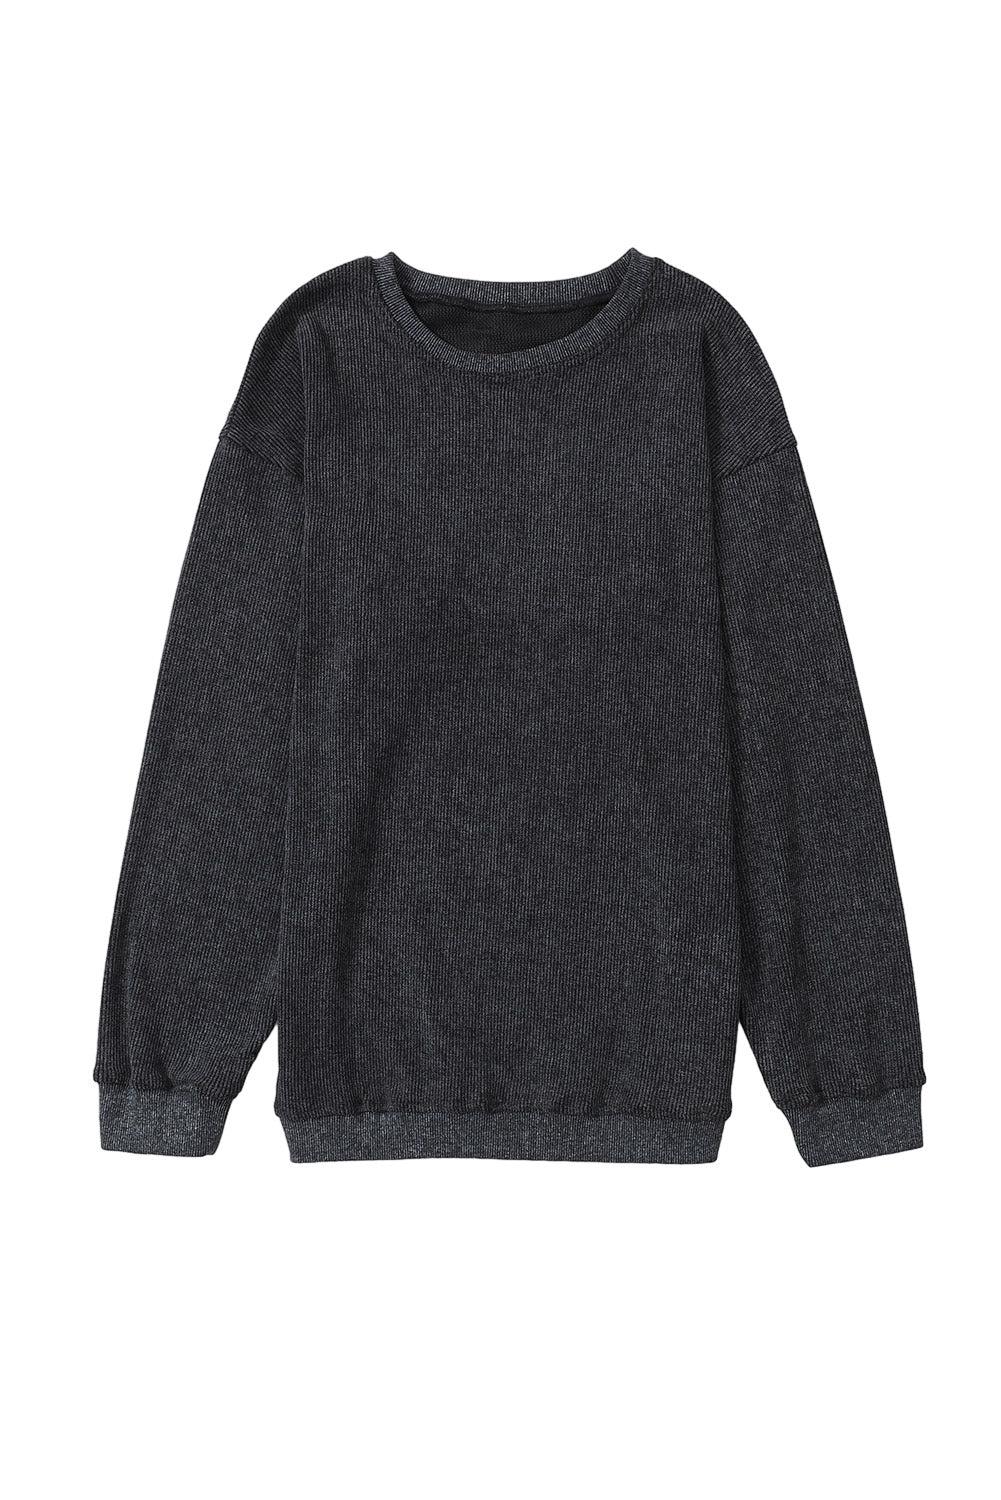 Crni jednobojni rebrasti pulover s okruglim izrezom